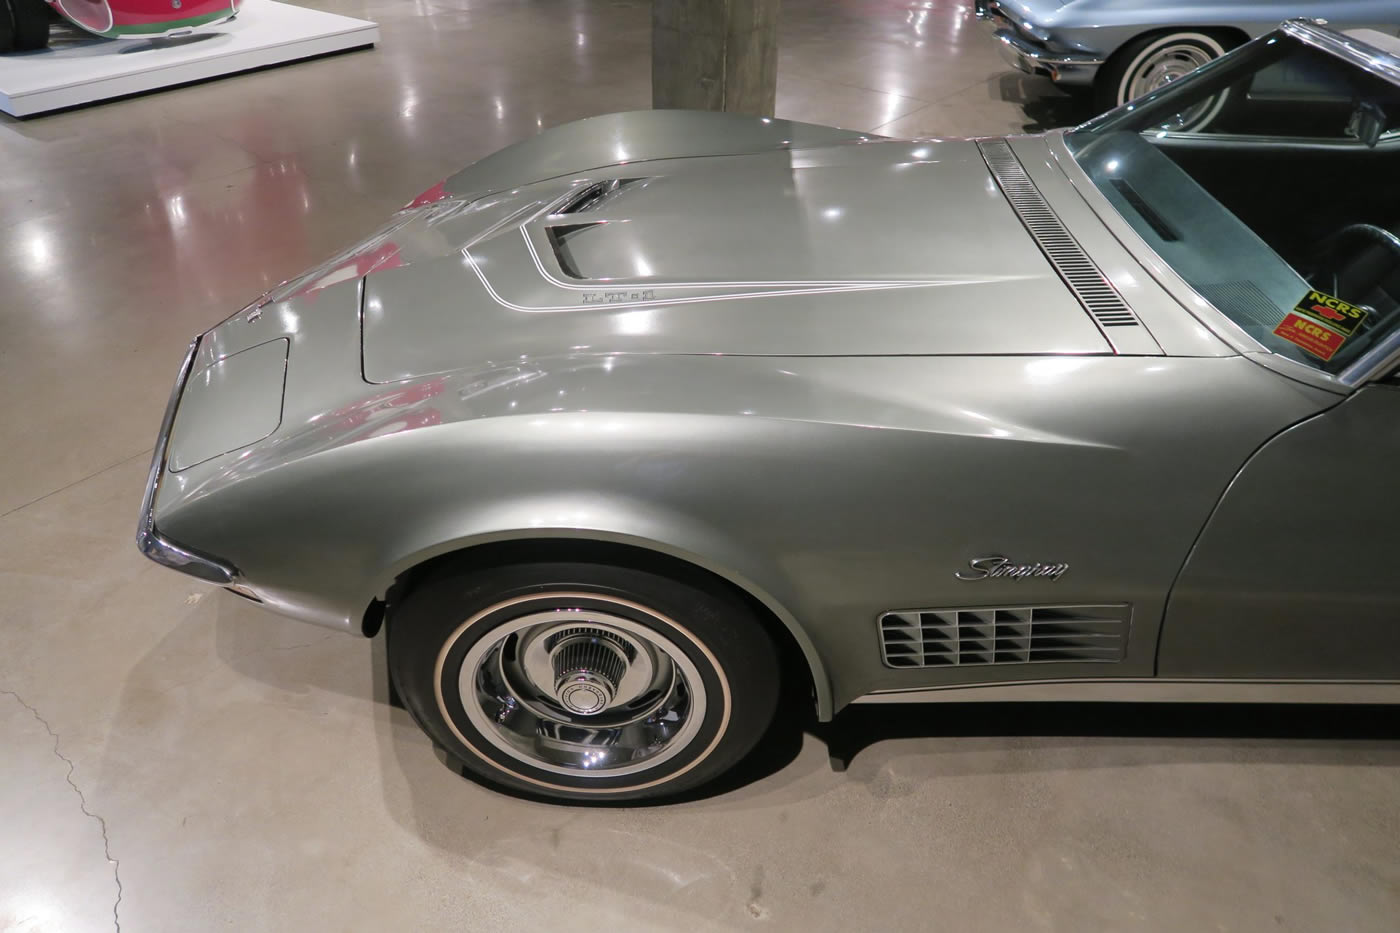 1971 Corvette LT1 Convertible in Steel Cities Gray